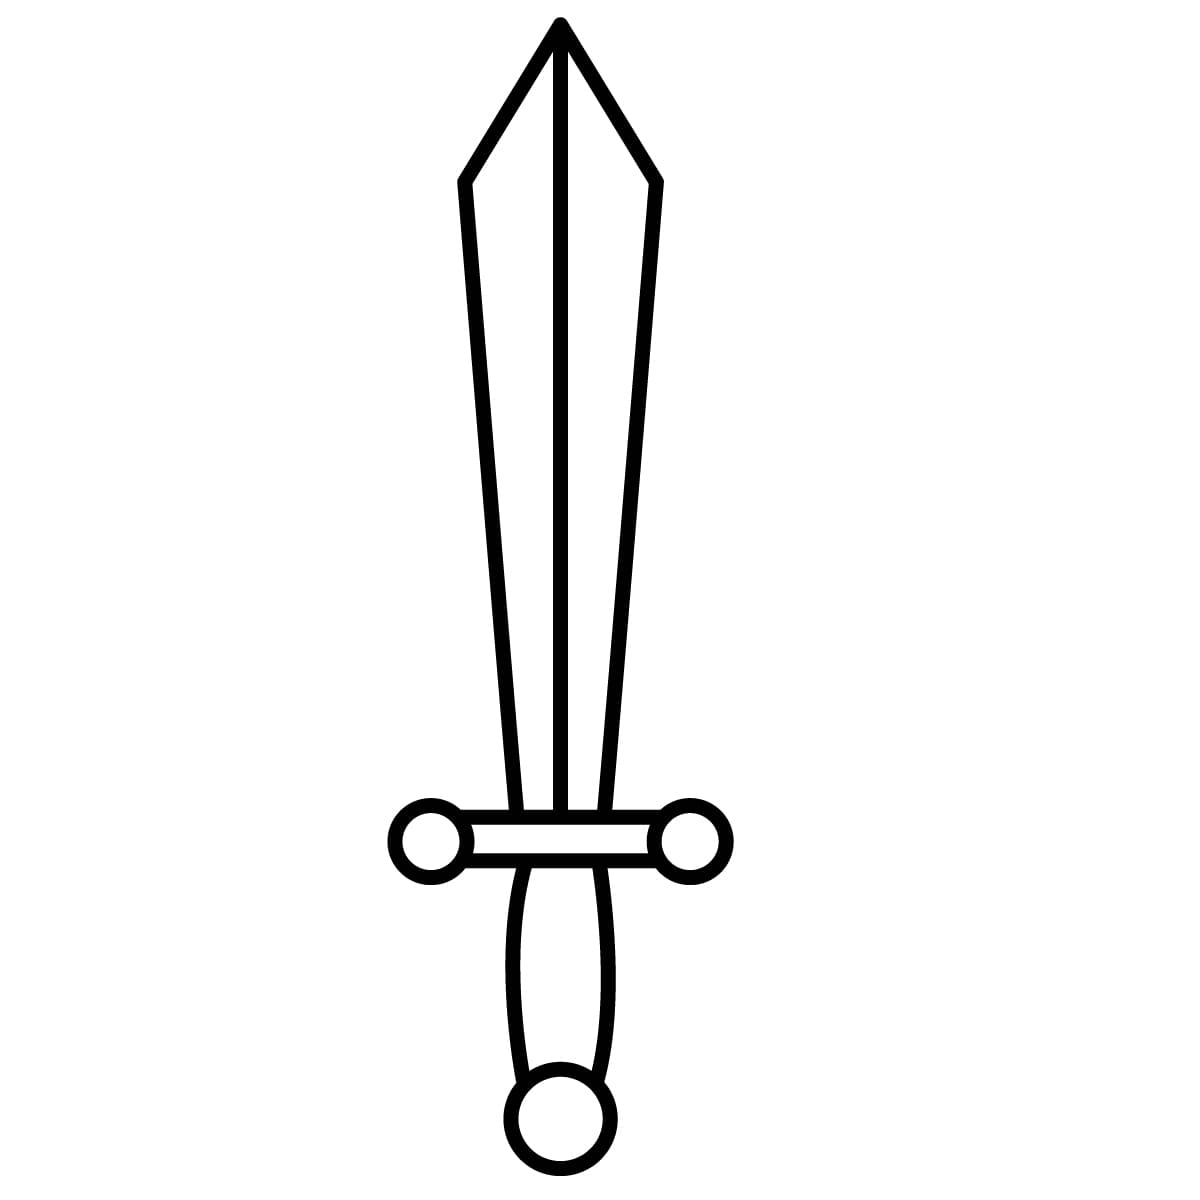 Imagen de espada para colorear